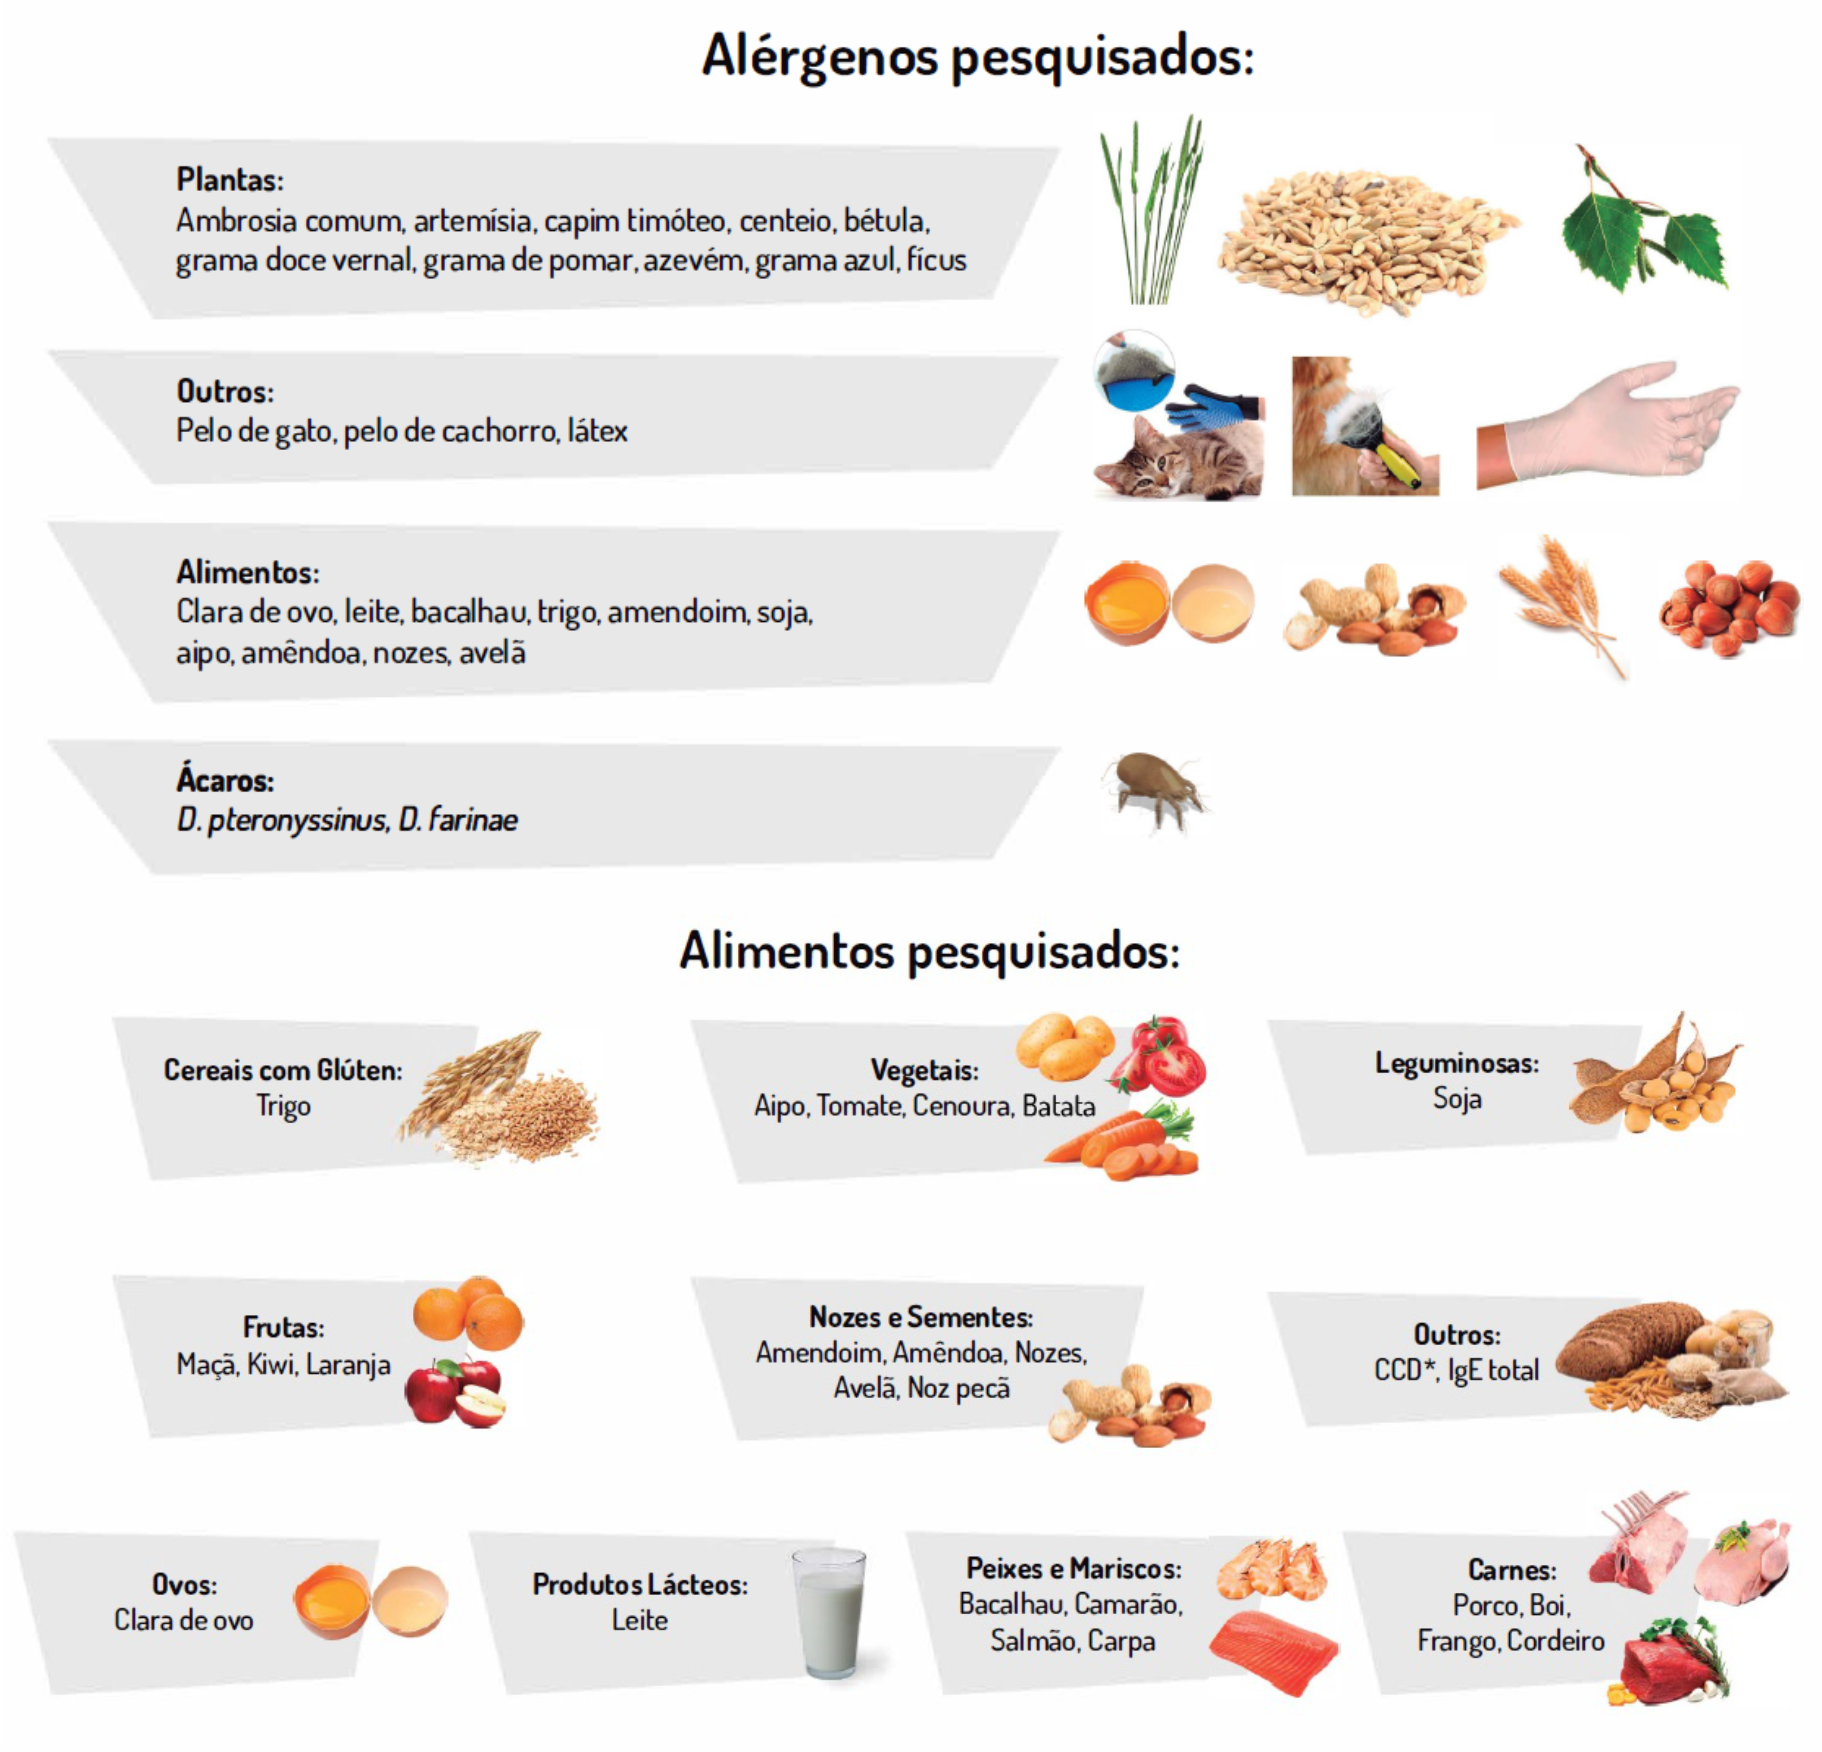 alérgenos e alimentos pesquisados